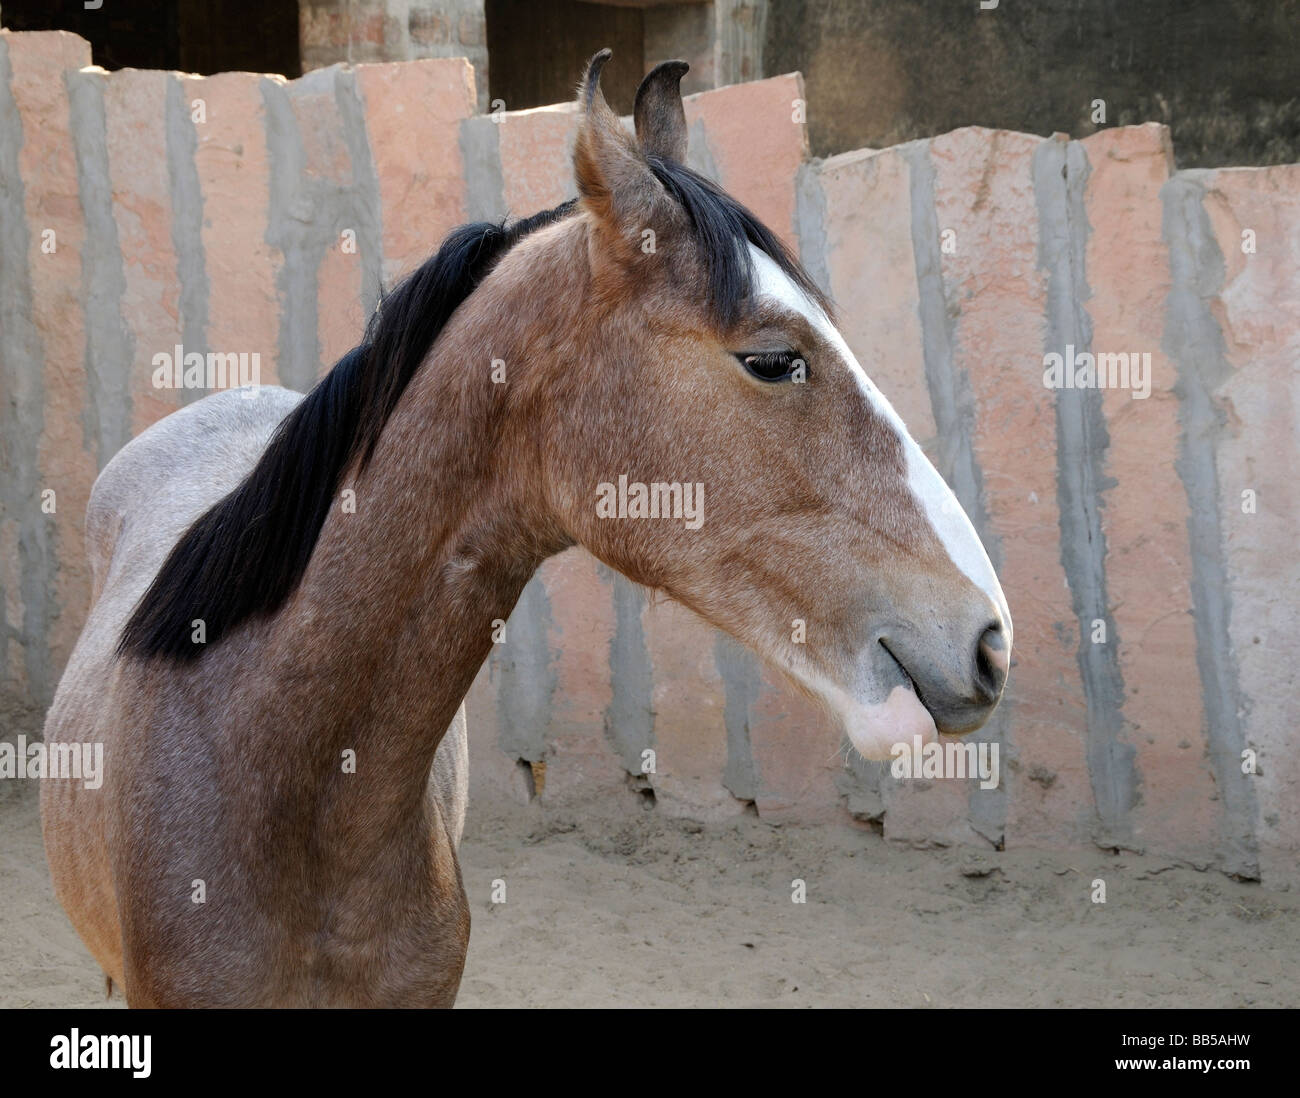 Un marwari horse se tient dans une enceinte faite de dalles de pierre. Le cheval a la caractéristique en forme de lyre pointant vers l'intérieur des oreilles. Banque D'Images